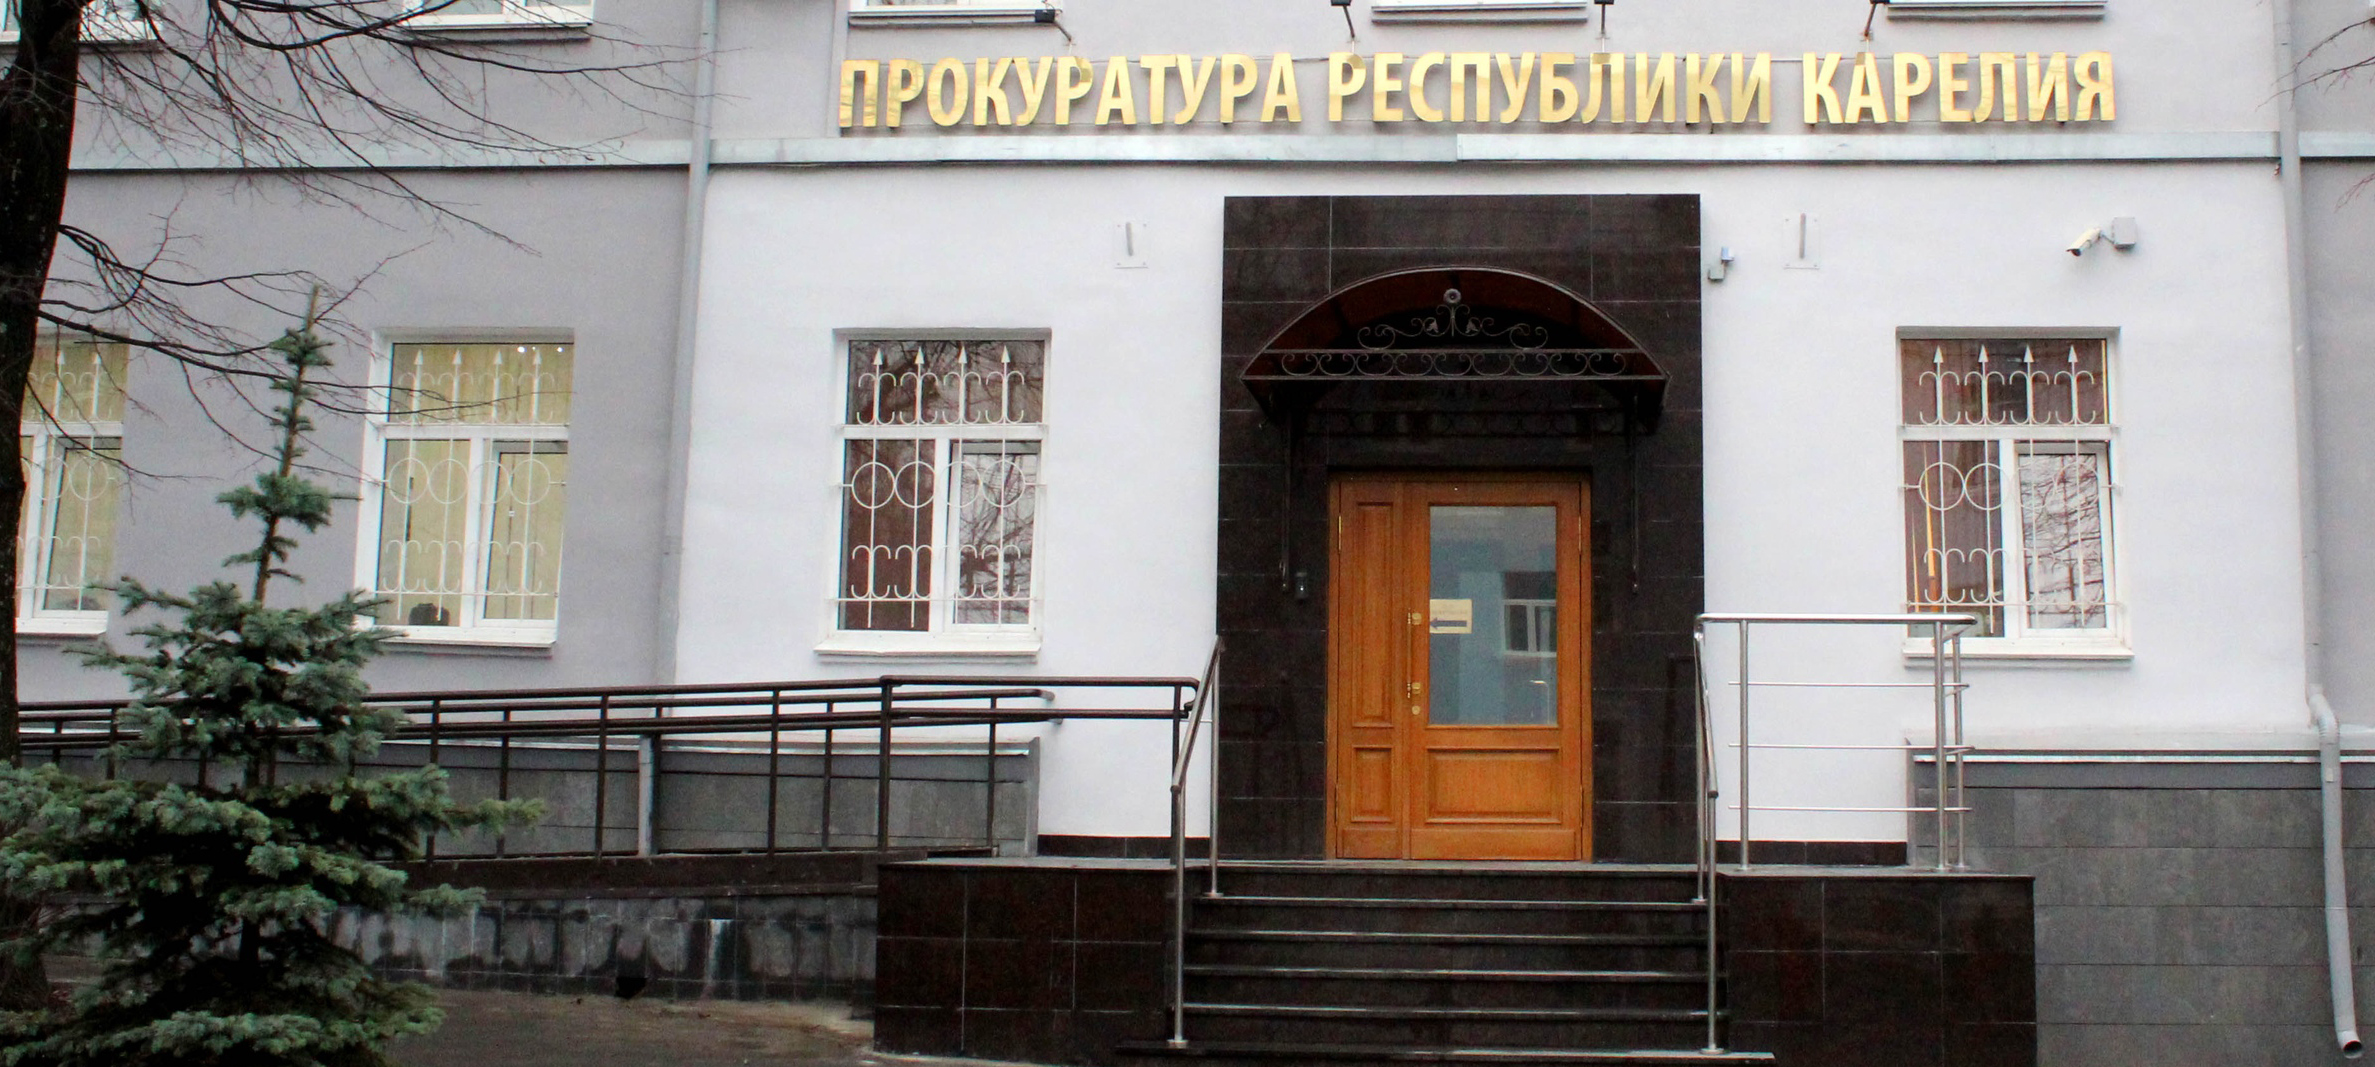 Жильцы многоквартирного дома в Карелии пожаловались в прокуратуру на управляющую компанию